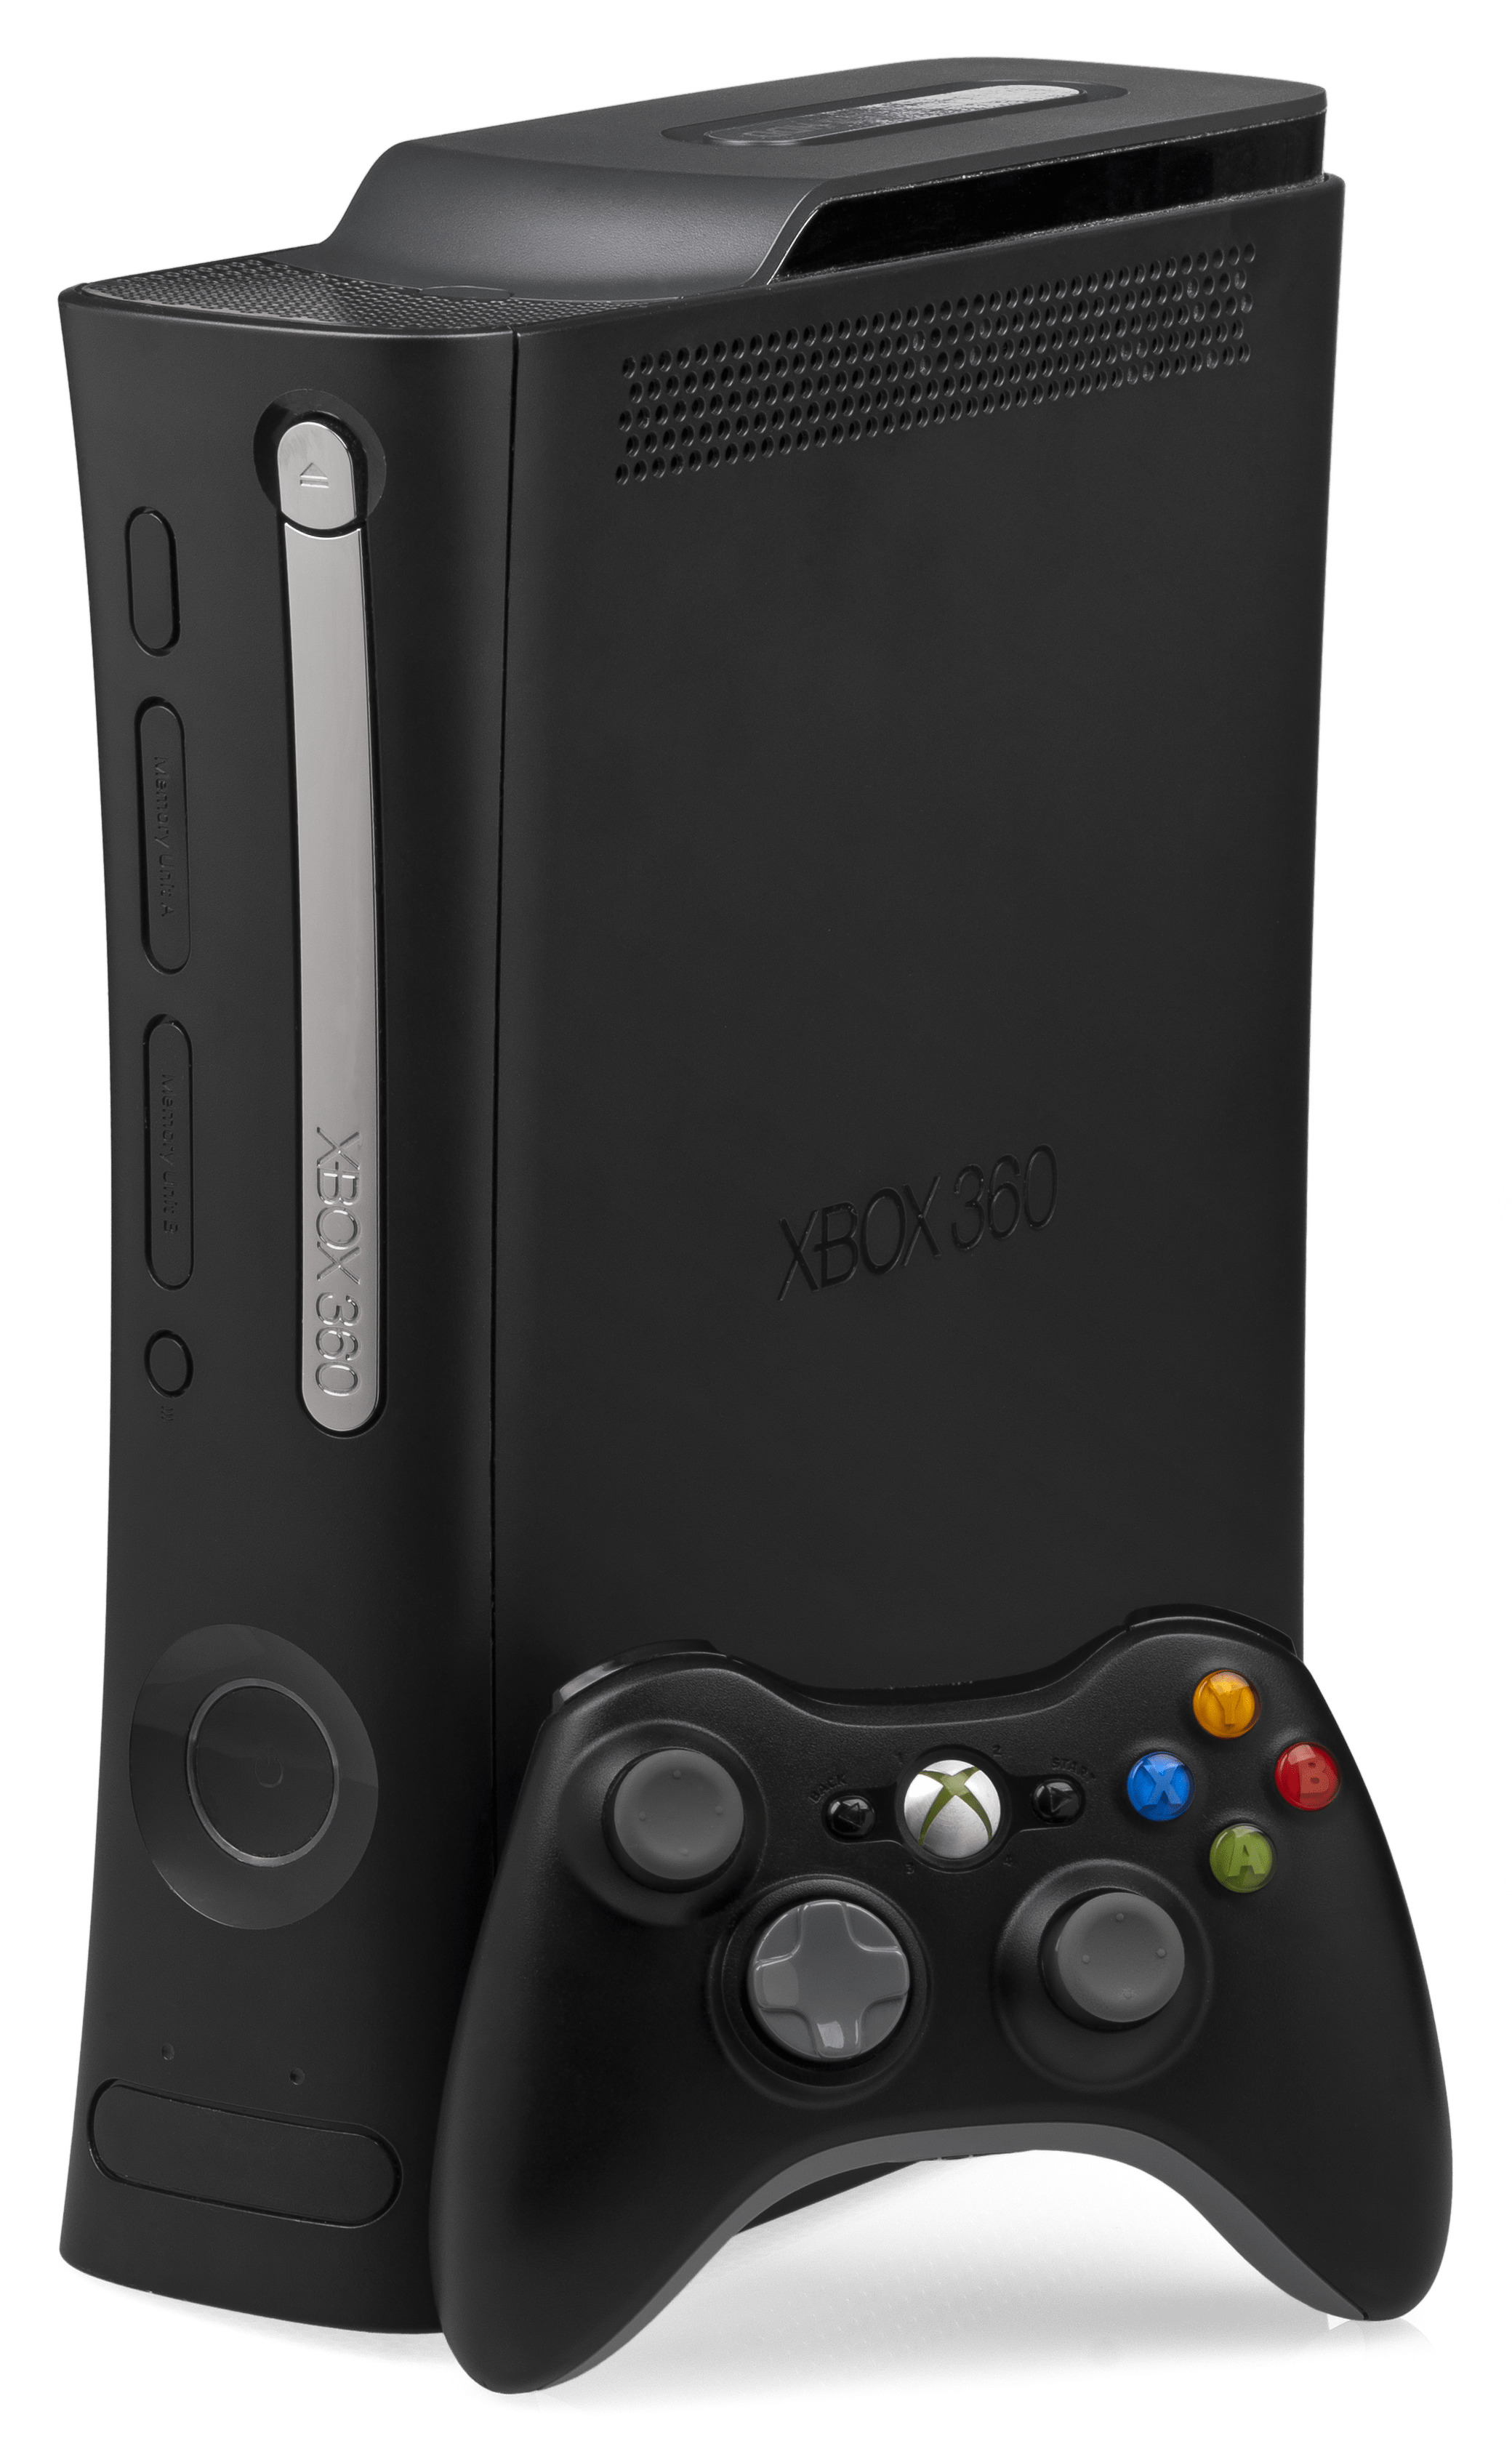 Xbox 360 icons